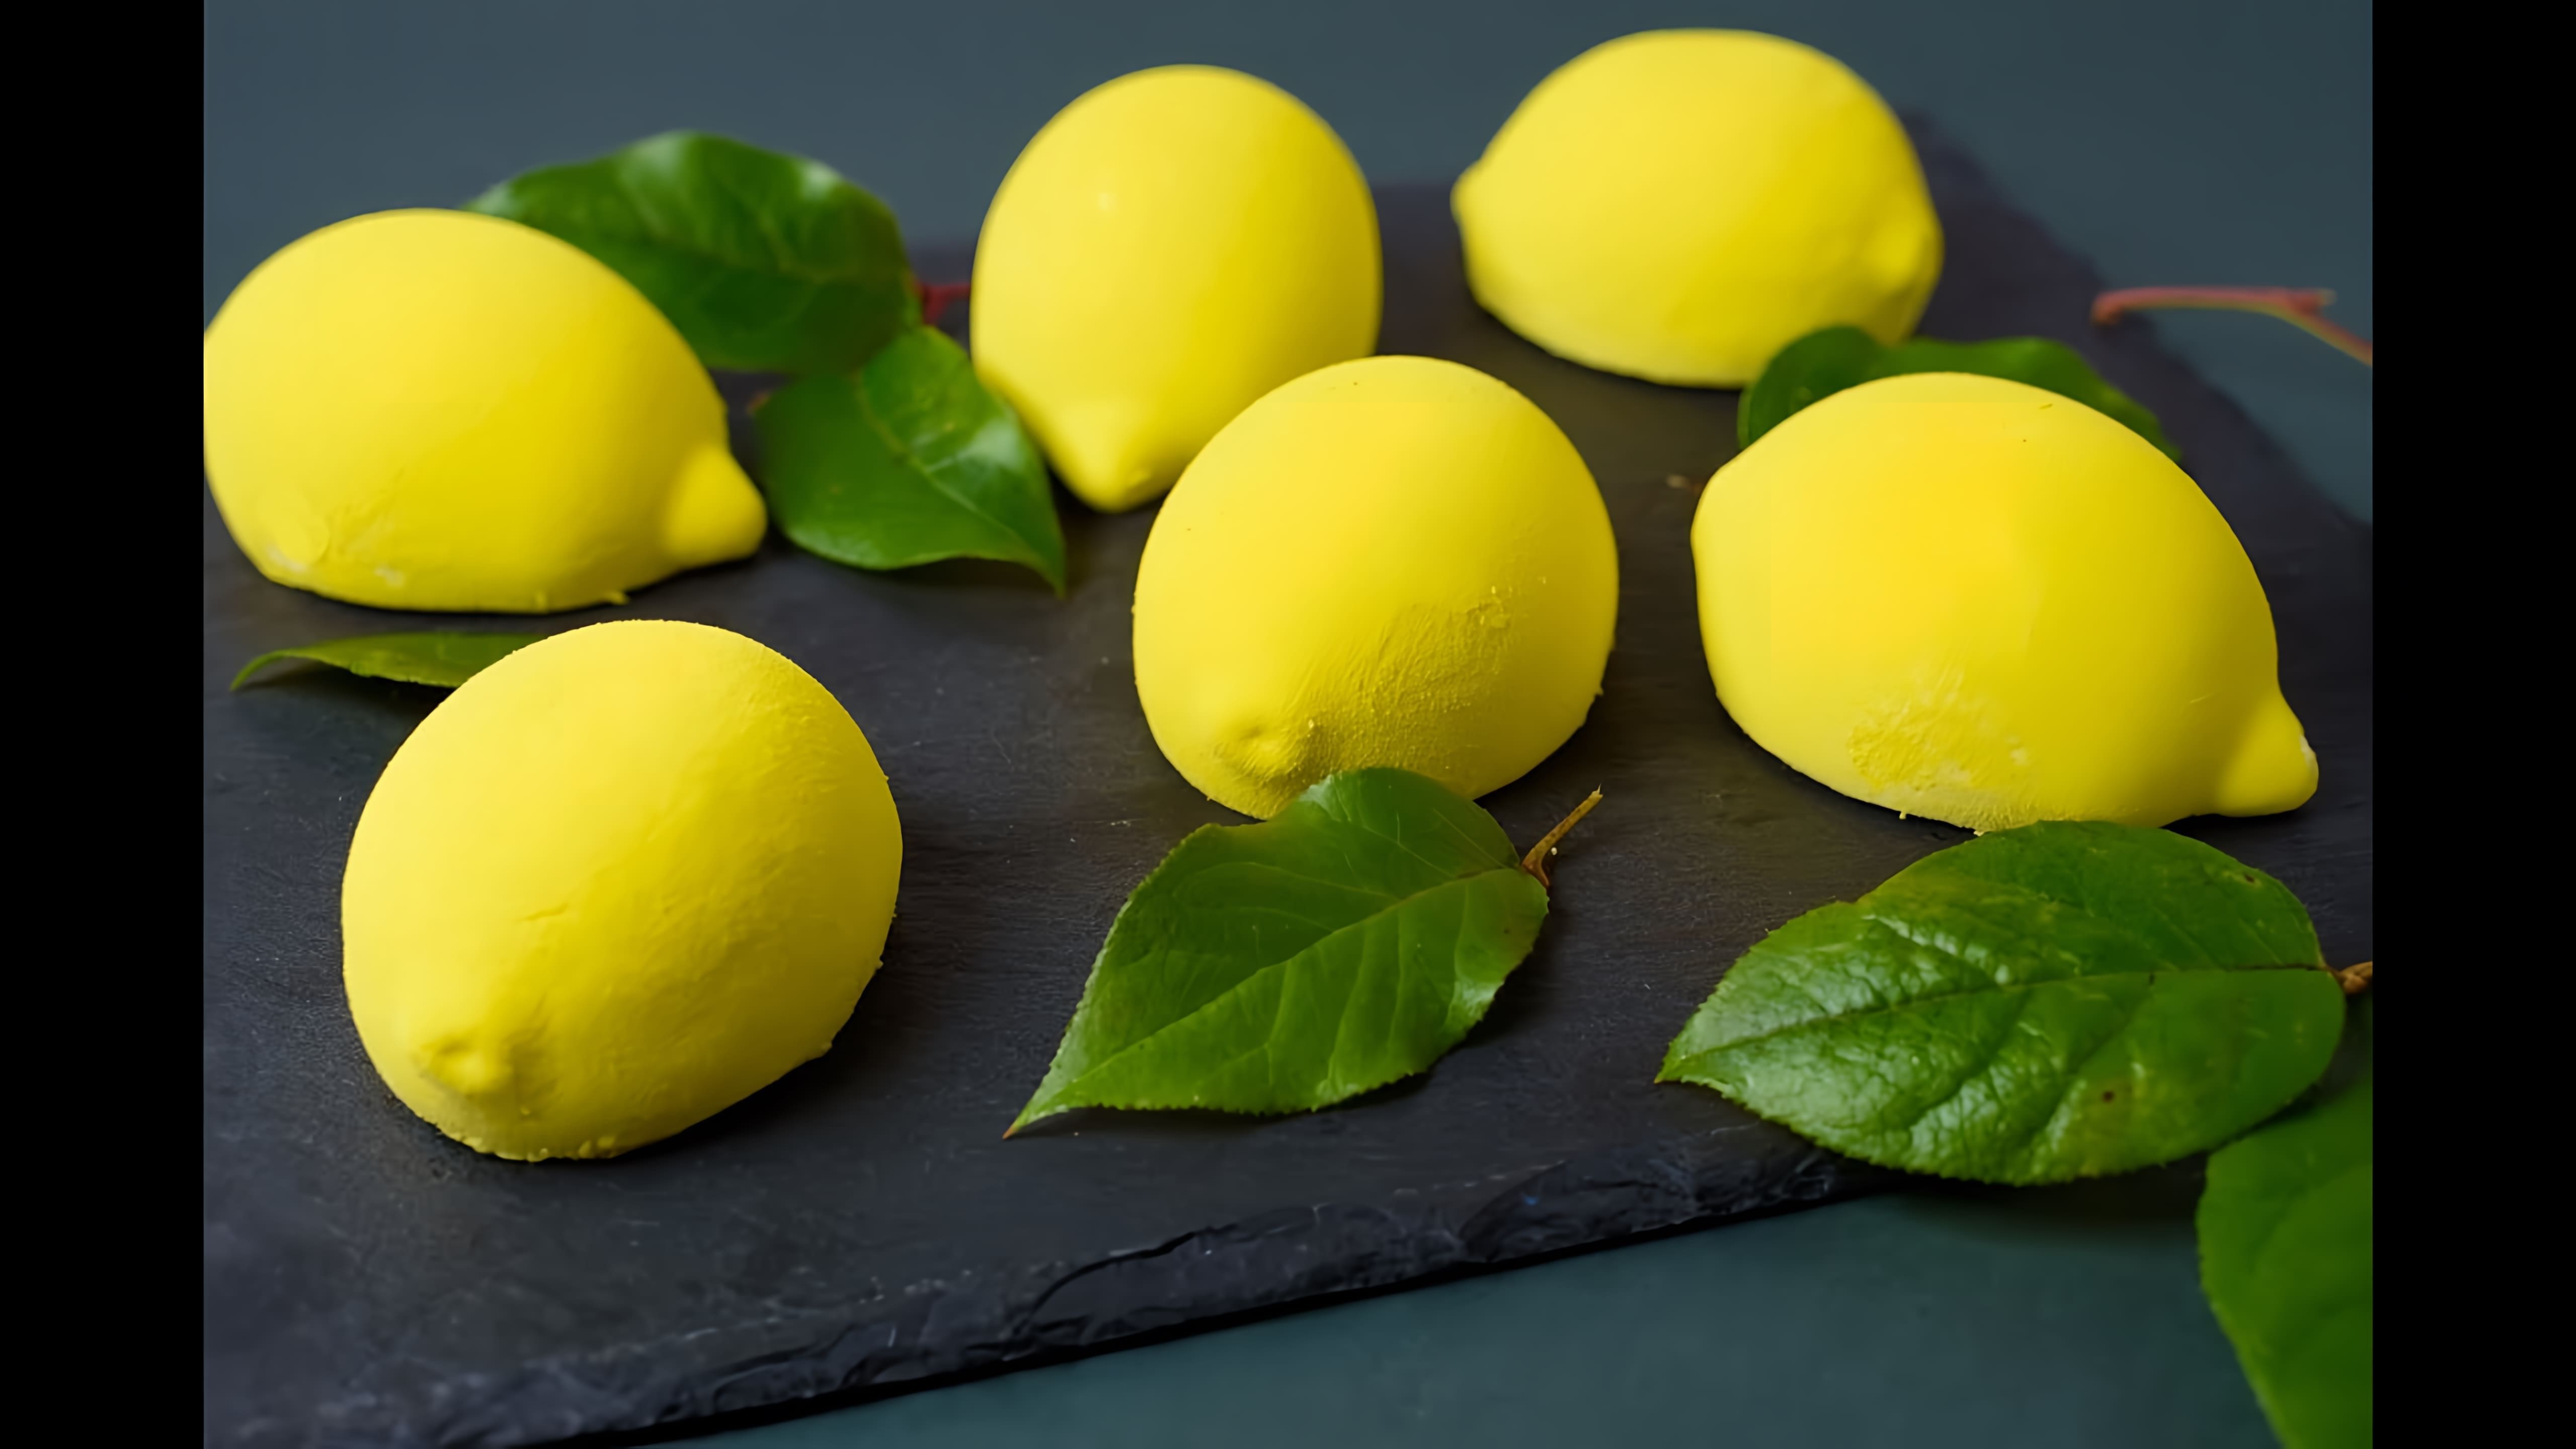 В этом видео демонстрируется процесс приготовления муссовых пирожных в форме лимонов